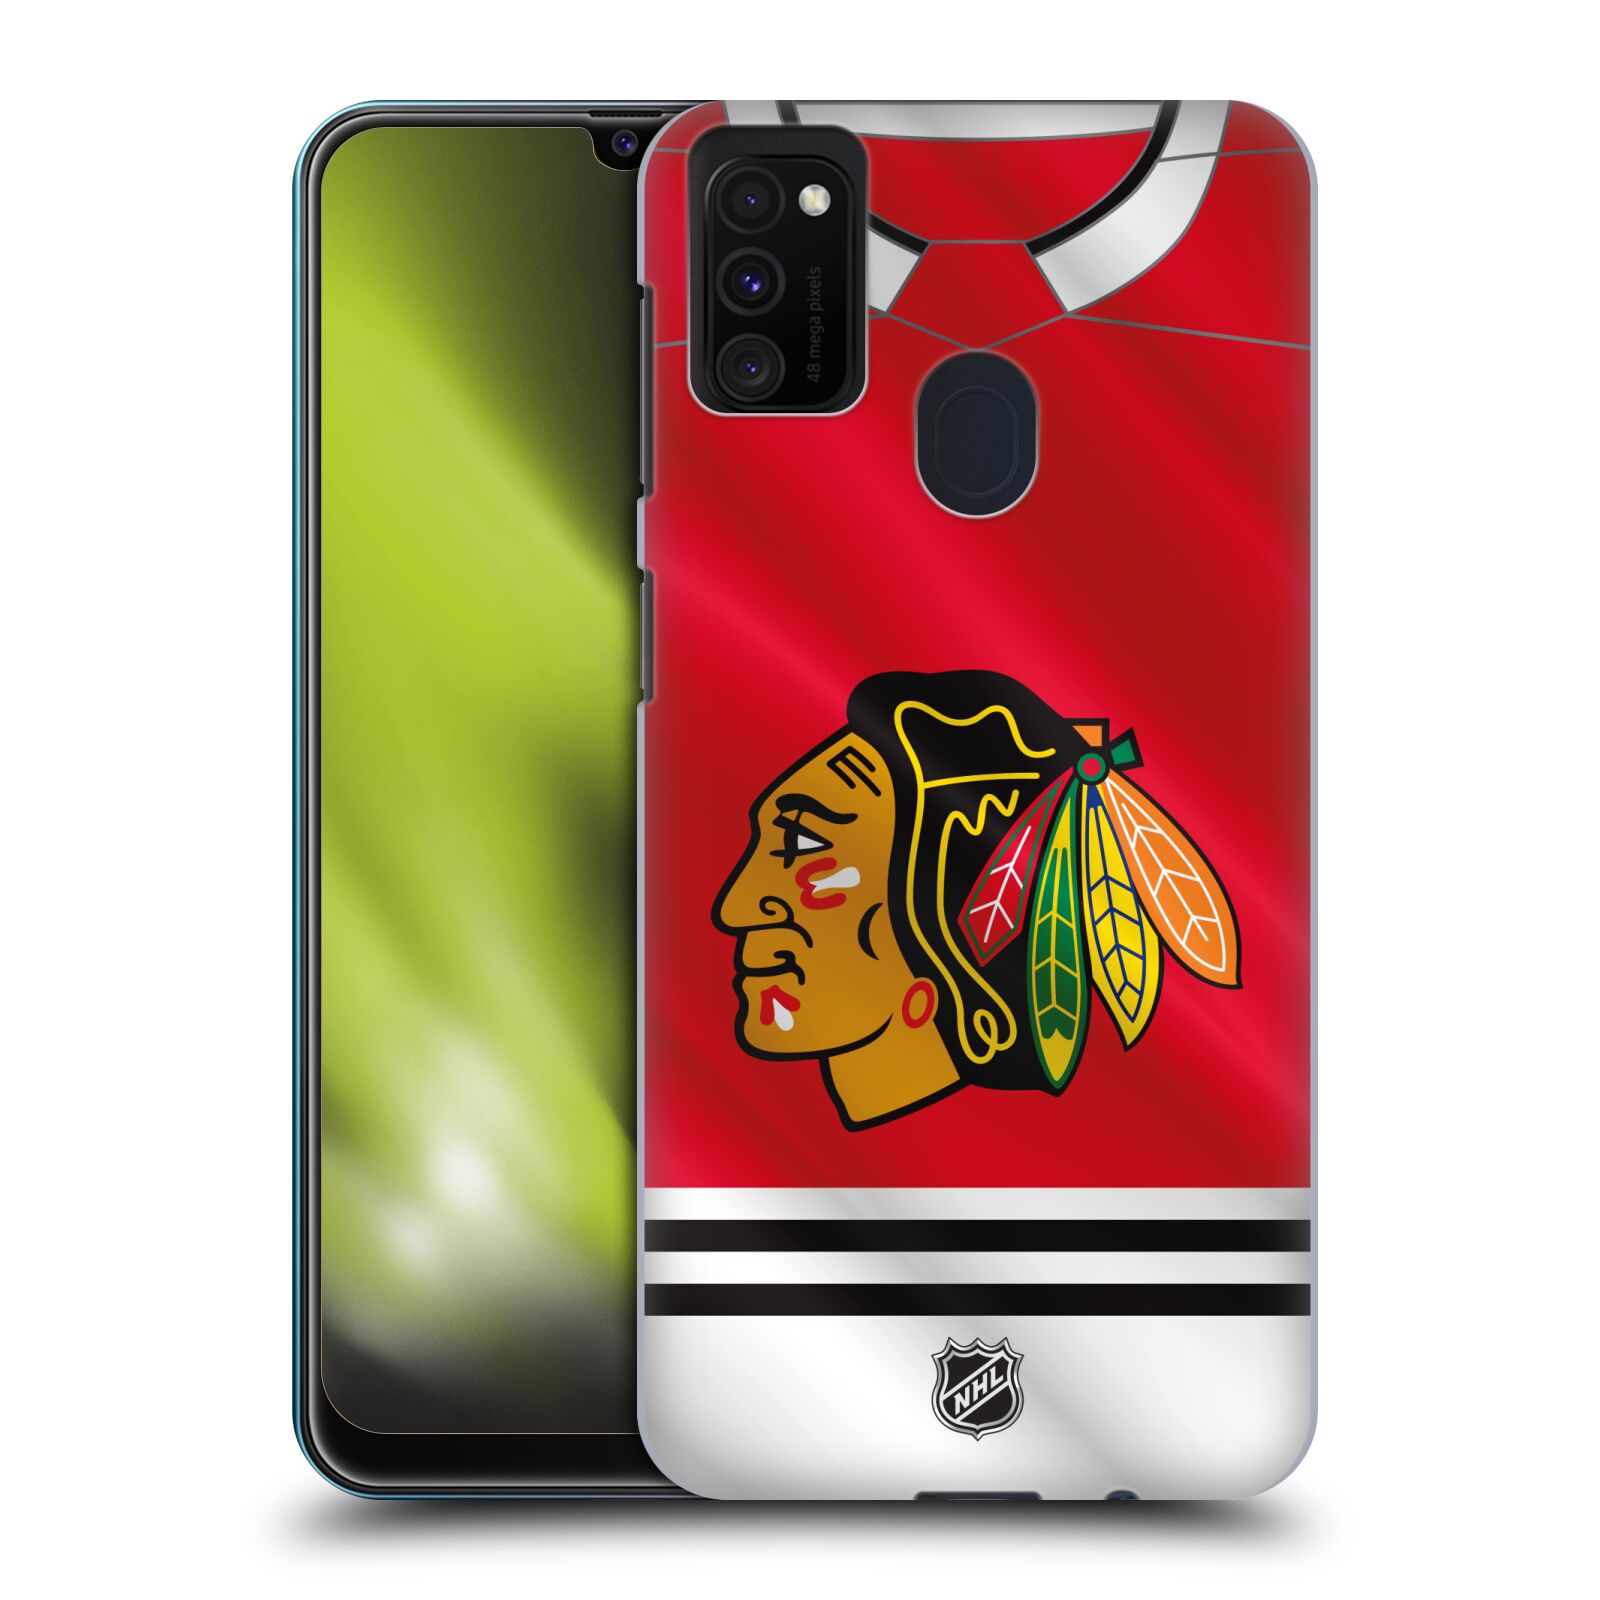 Pouzdro na mobil Samsung Galaxy M21 - HEAD CASE - Hokej NHL - Chicago Blackhawks - dres